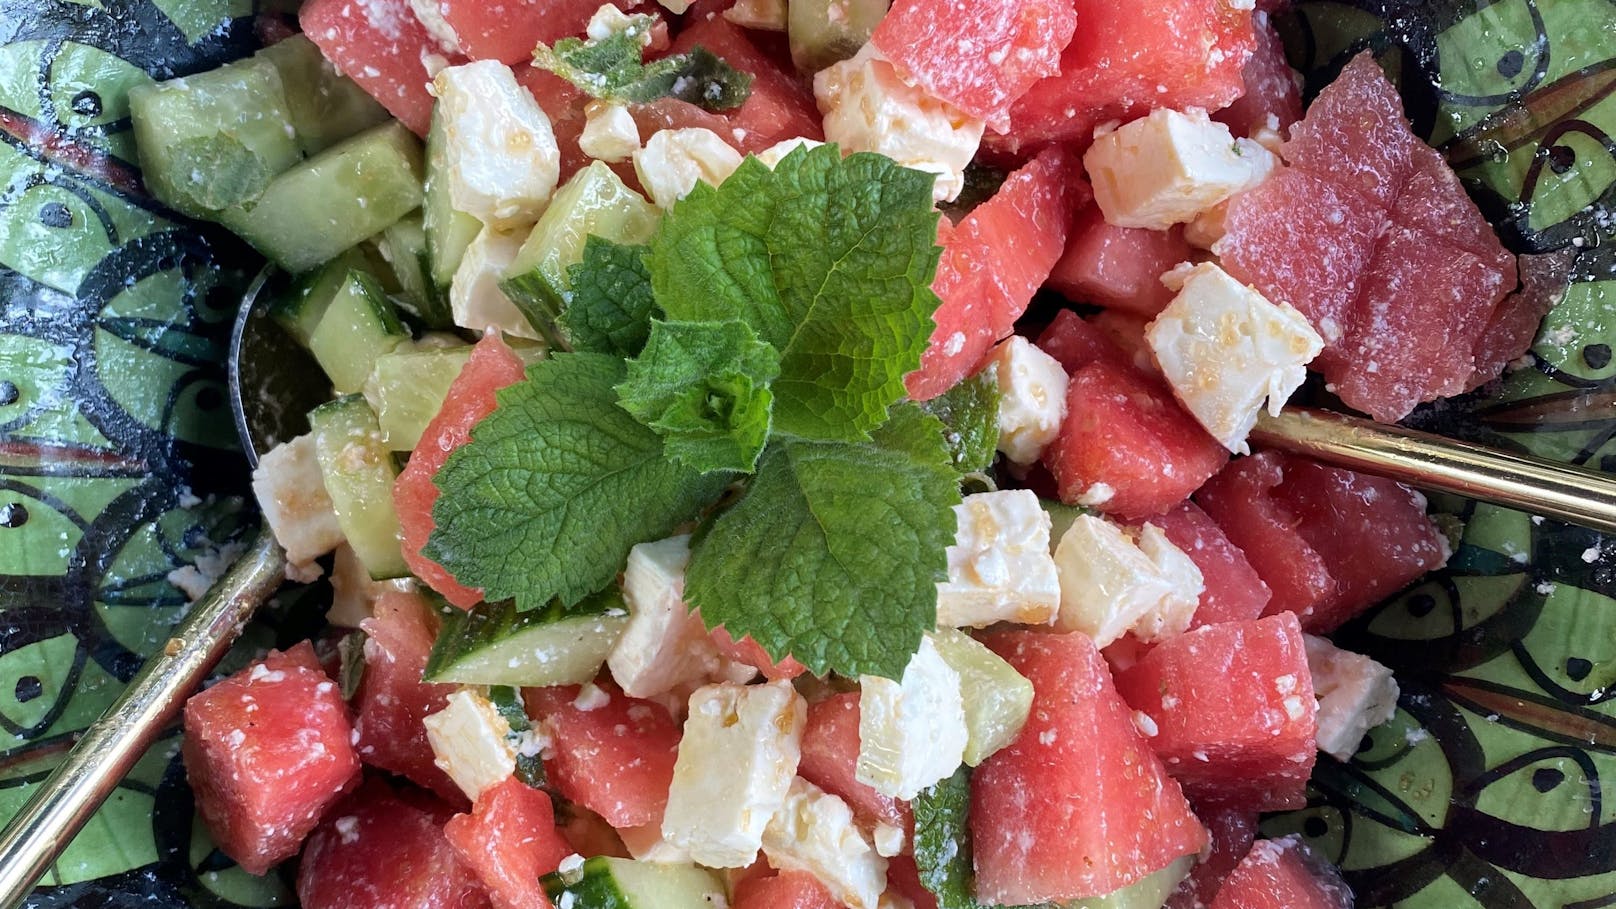 Wassermelonen-Feta-Salat schmeckt nicht nur herrlich, sondern erfrischt auch mit Minze und viel Wasser aus der Meone.